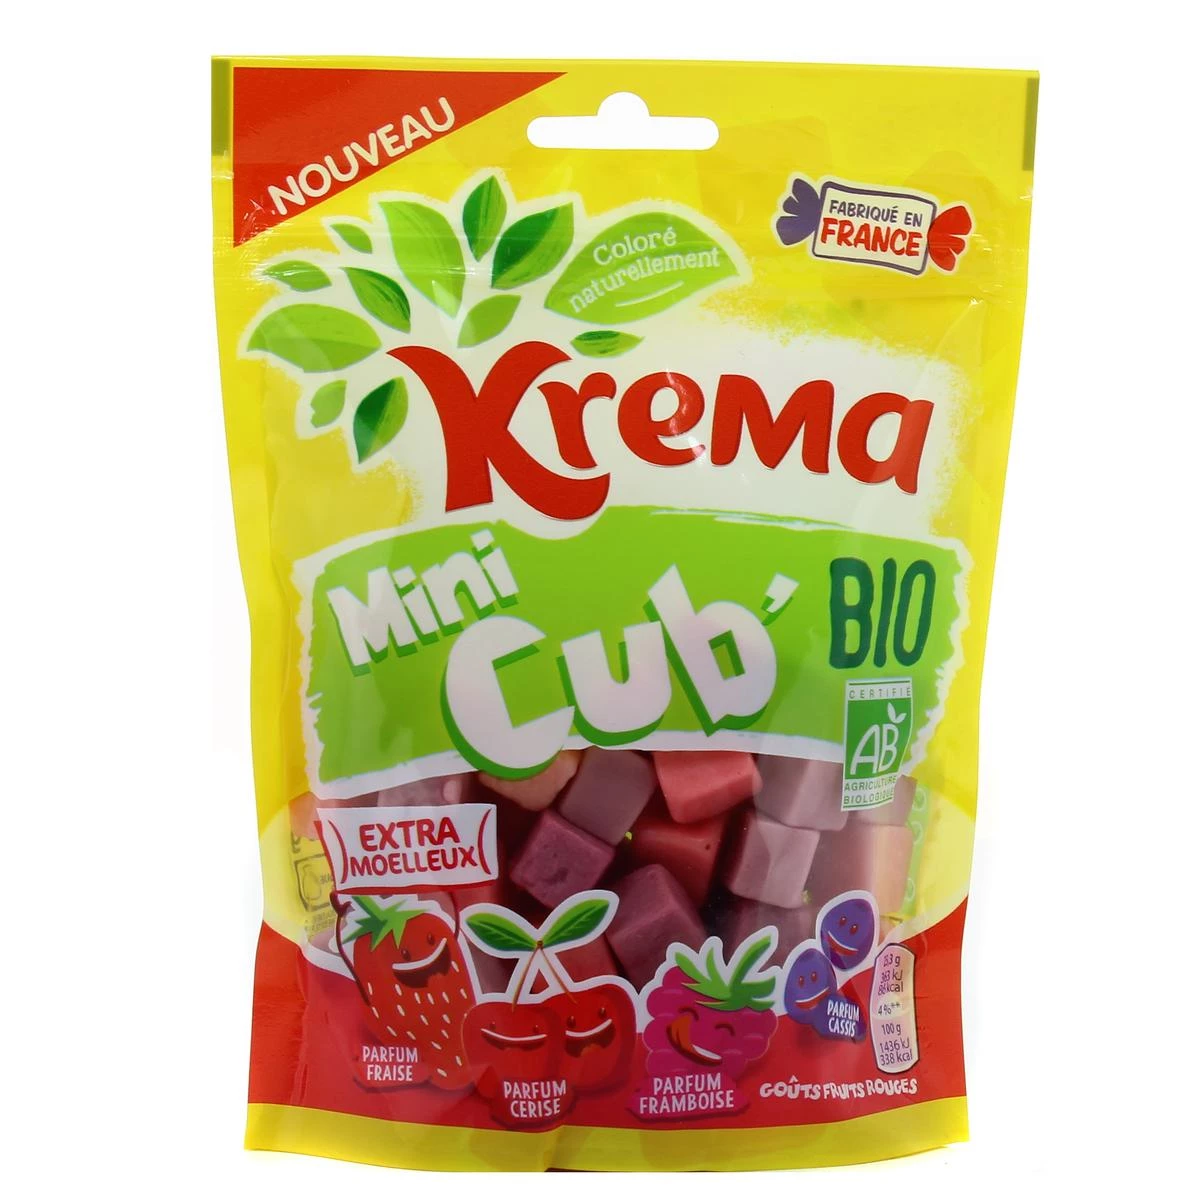 Caramelos de frutos rojos mini cub ecologicos 130g - KREMA